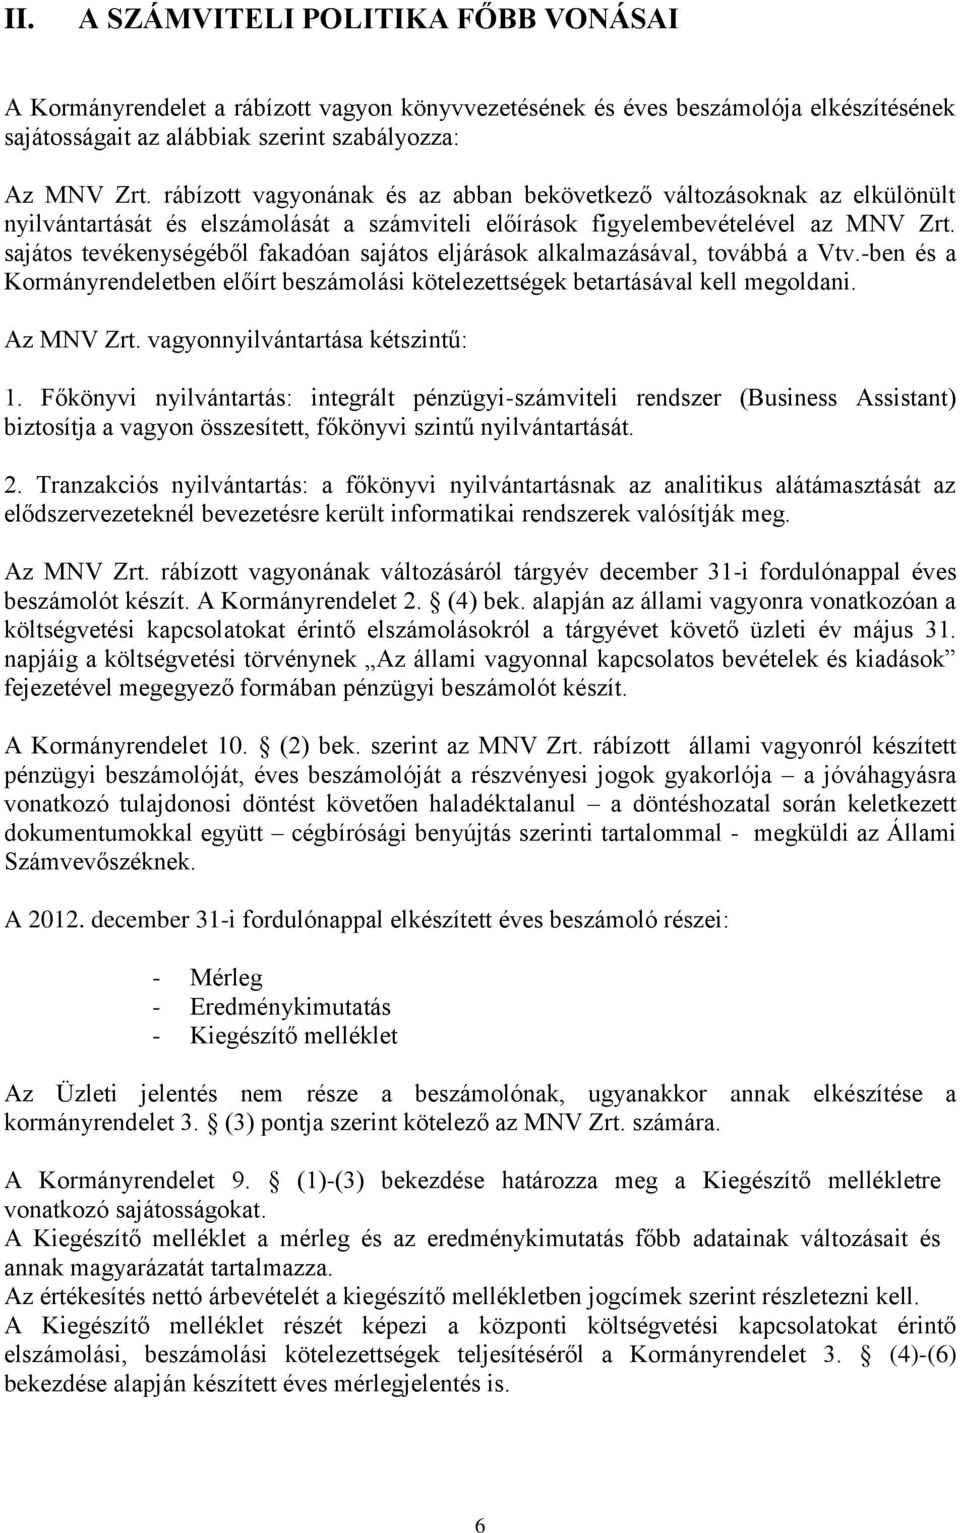 sajátos tevékenységéből fakadóan sajátos eljárások alkalmazásával, továbbá a Vtv.-ben és a Kormányrendeletben előírt beszámolási kötelezettségek betartásával kell megoldani. Az MNV Zrt.